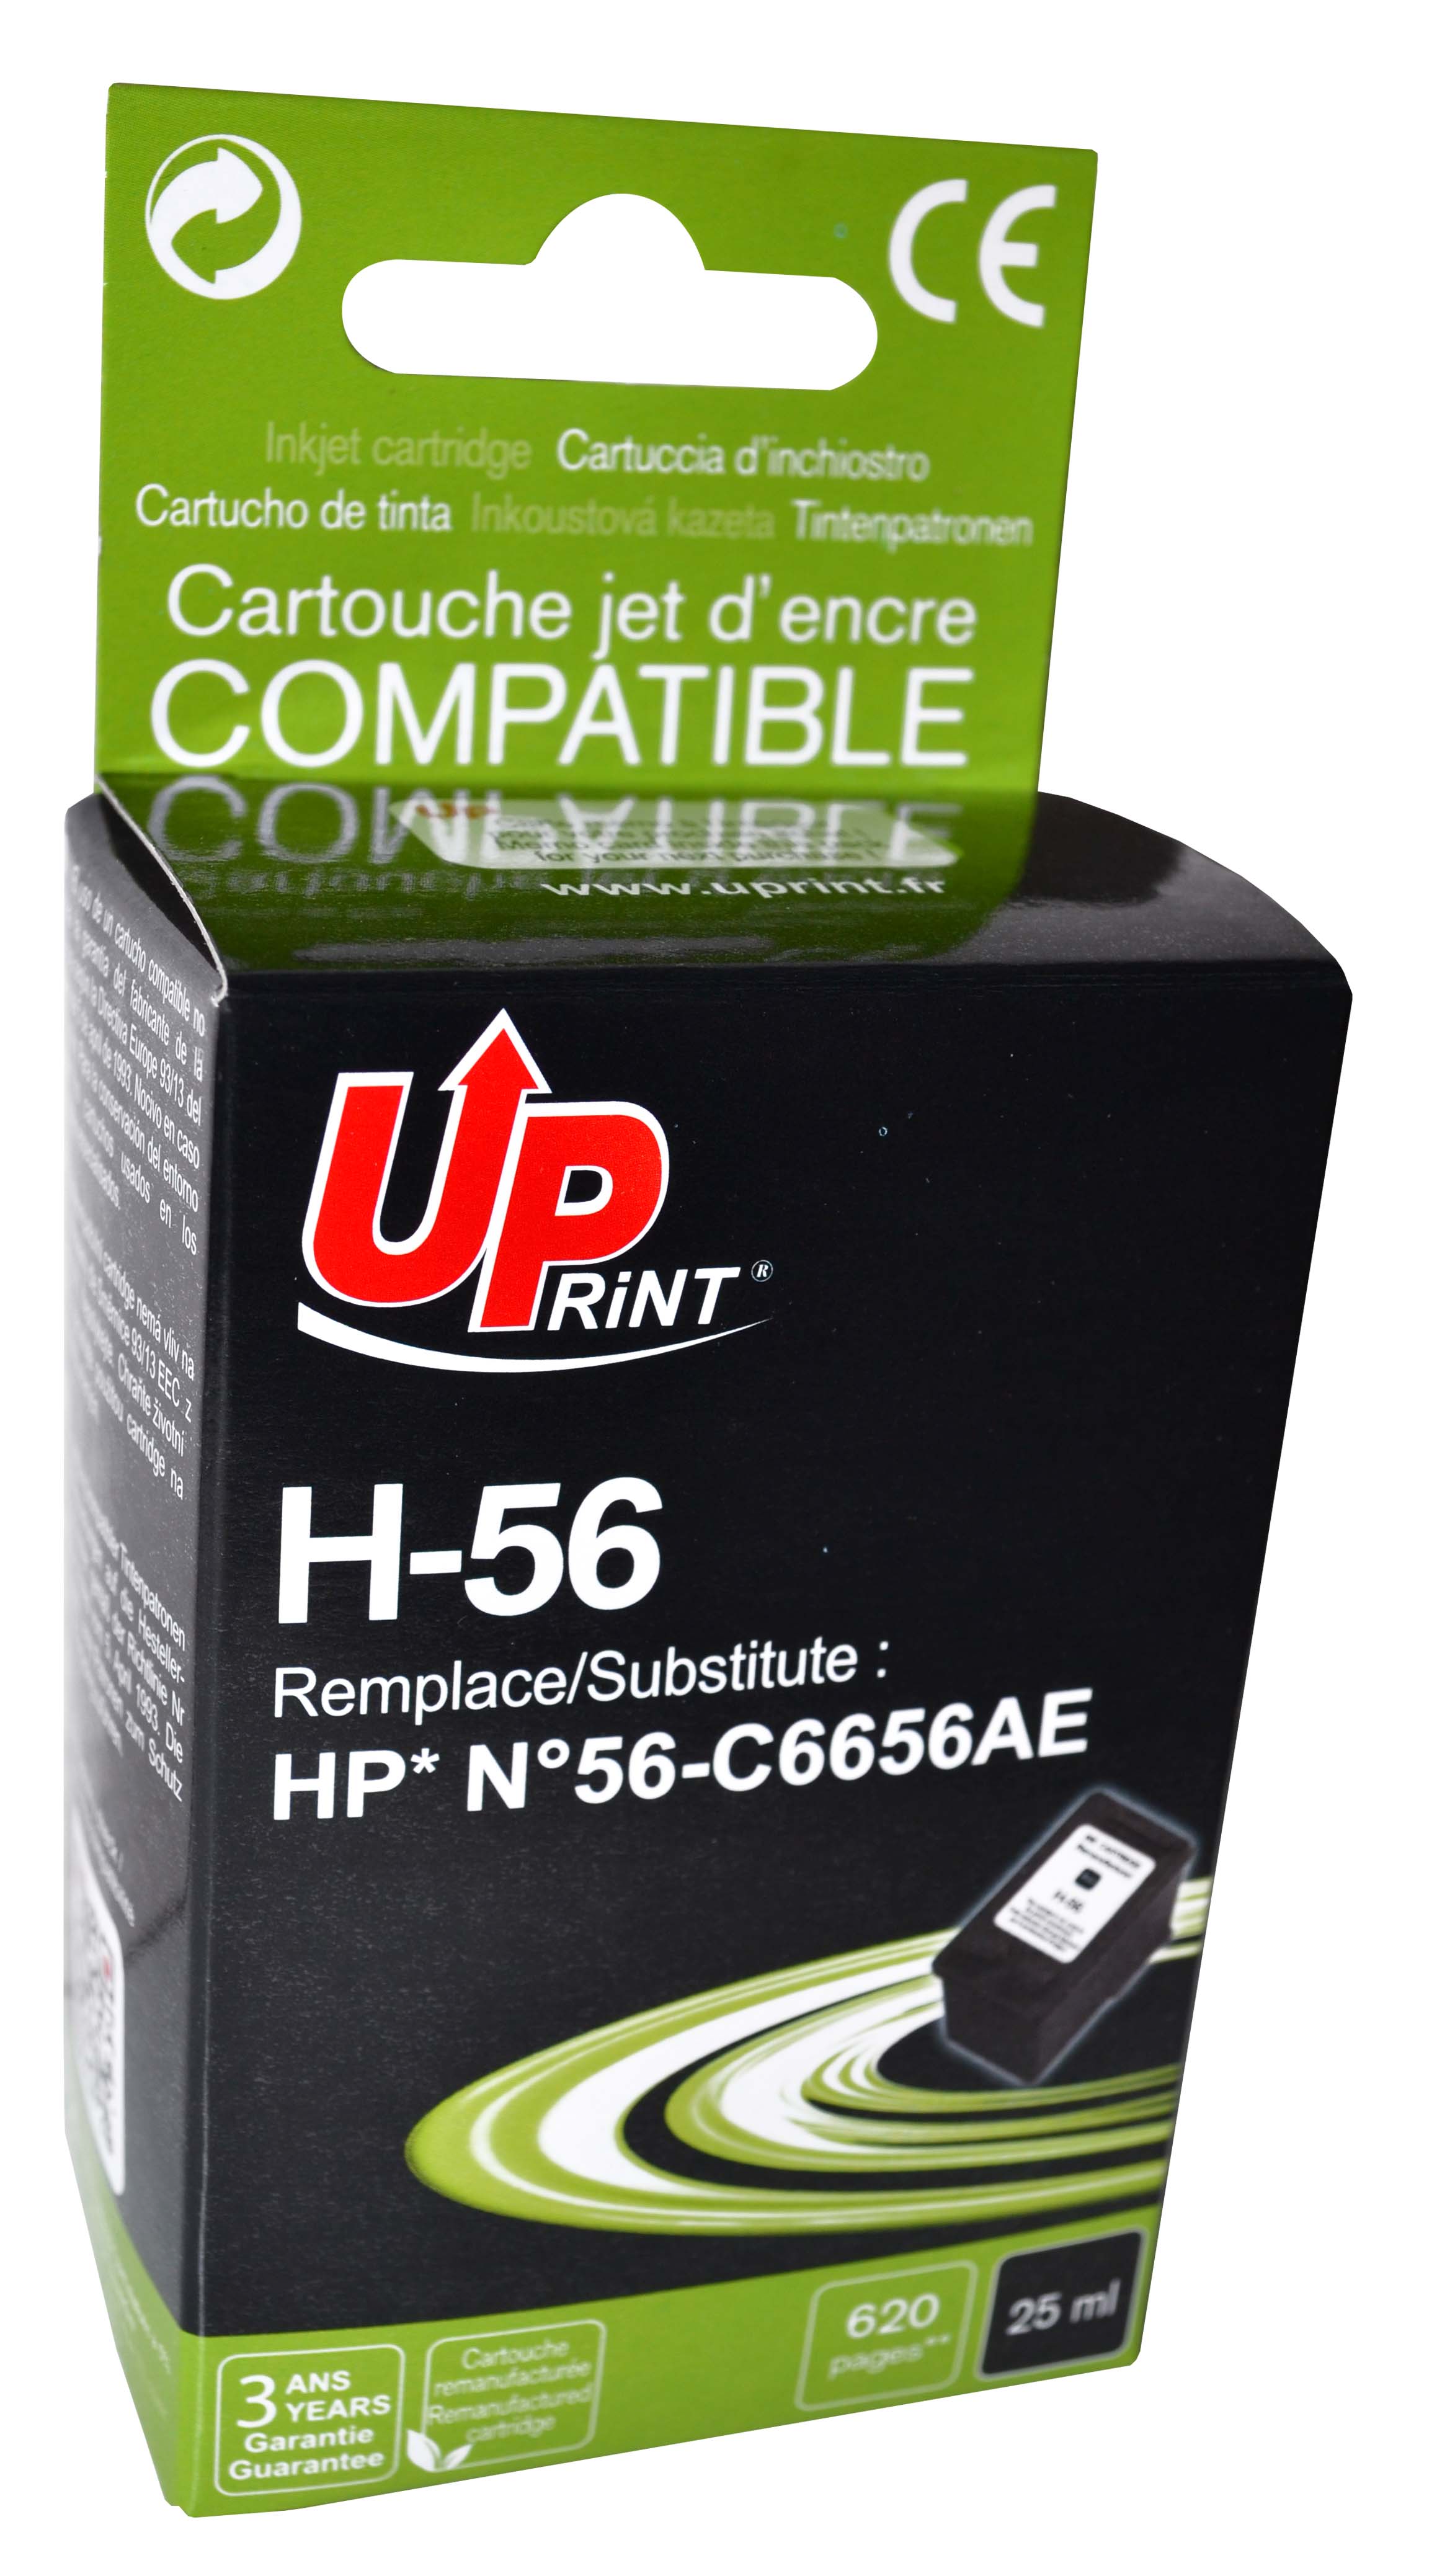 Obtenir les derniers Cartouche D'encre HP 56 Black Compatible du